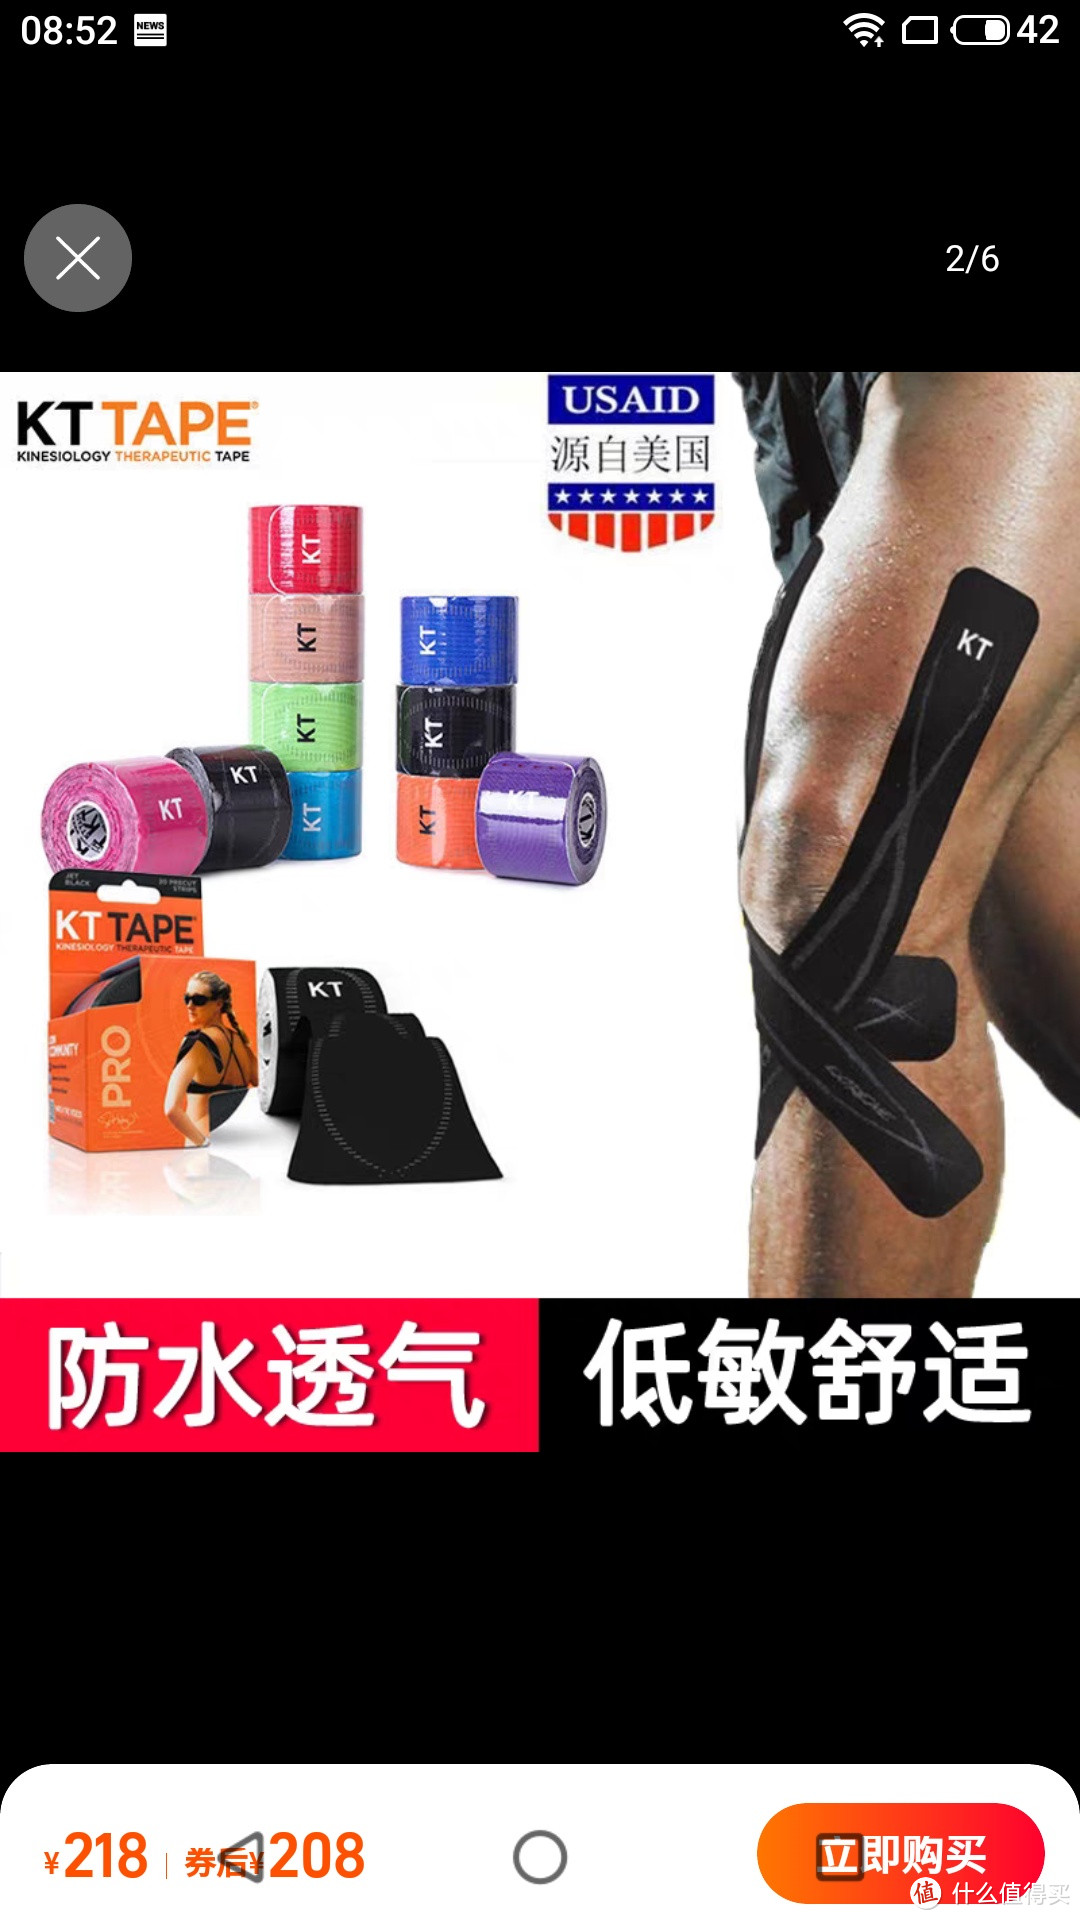 万物皆可测 美国kttape肌肉贴运动绷带肌贴肌内效贴布运动员专用肌肉拉伤胶带